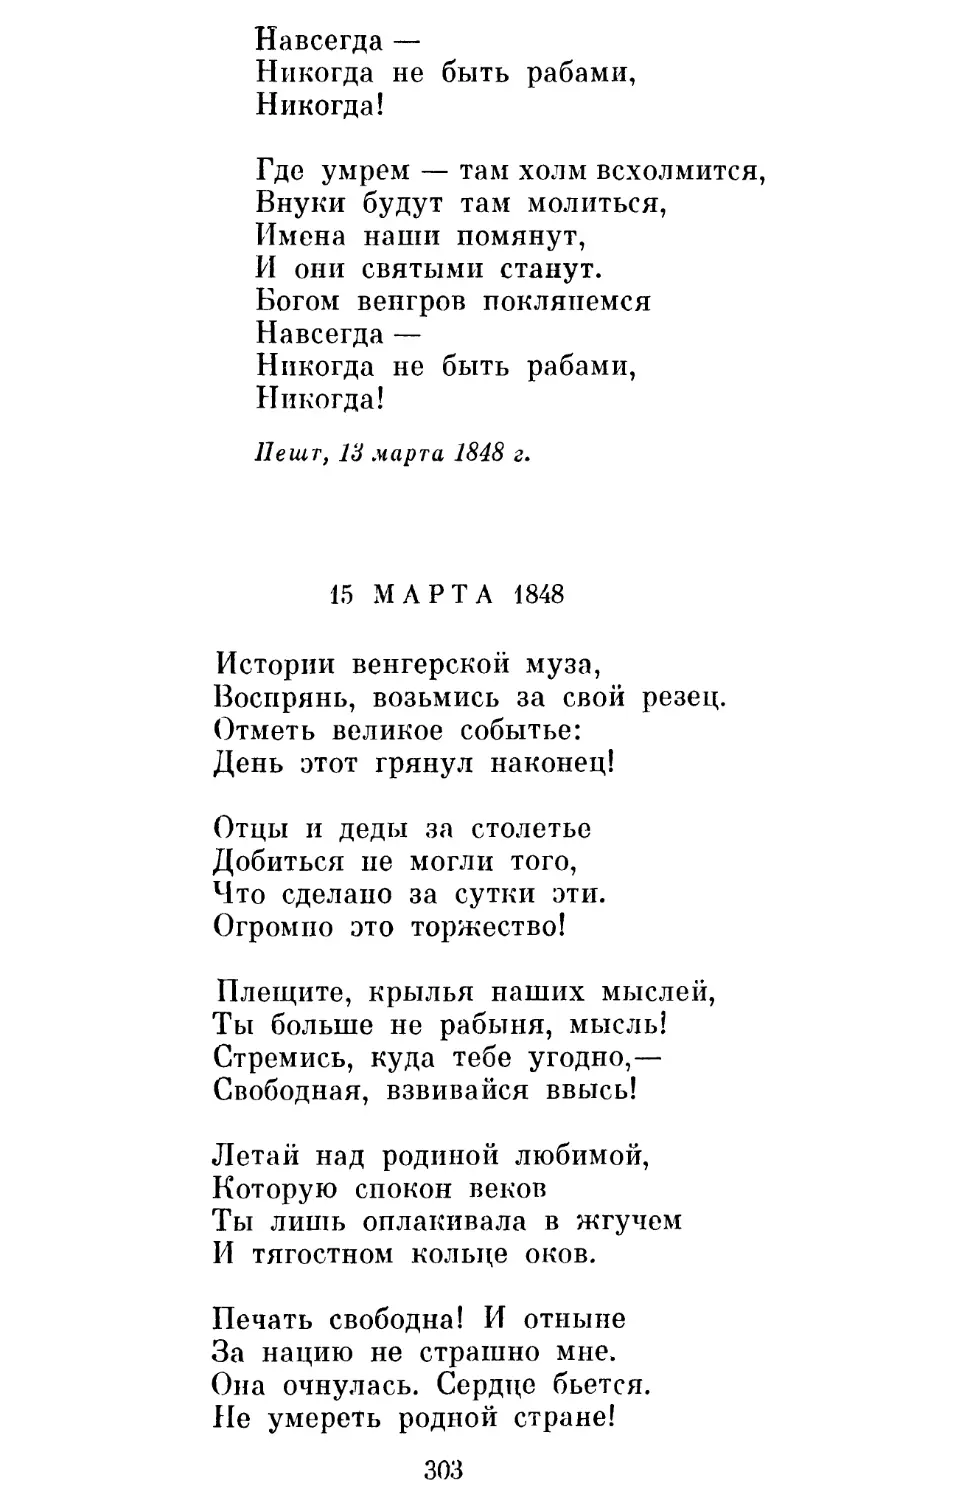 15 марта 1848 года. Перевод Л. Мартынова